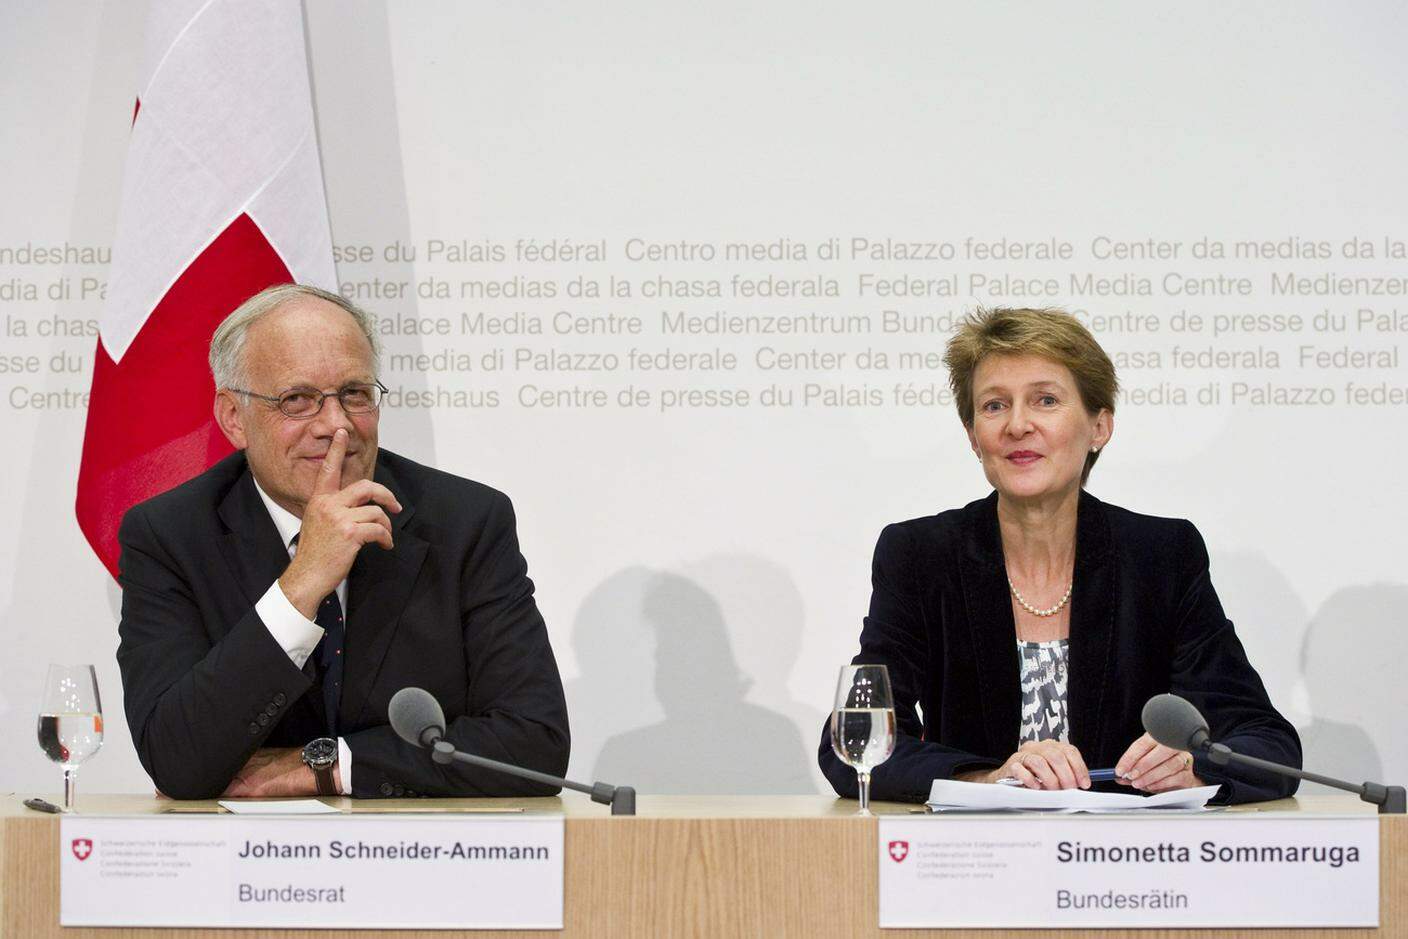 Settembre 2010: Schneider-Ammann e Sommaruga, qui durante la loro prima conferenza stampa a Berna subito dopo la loro elezione a consiglieri federali